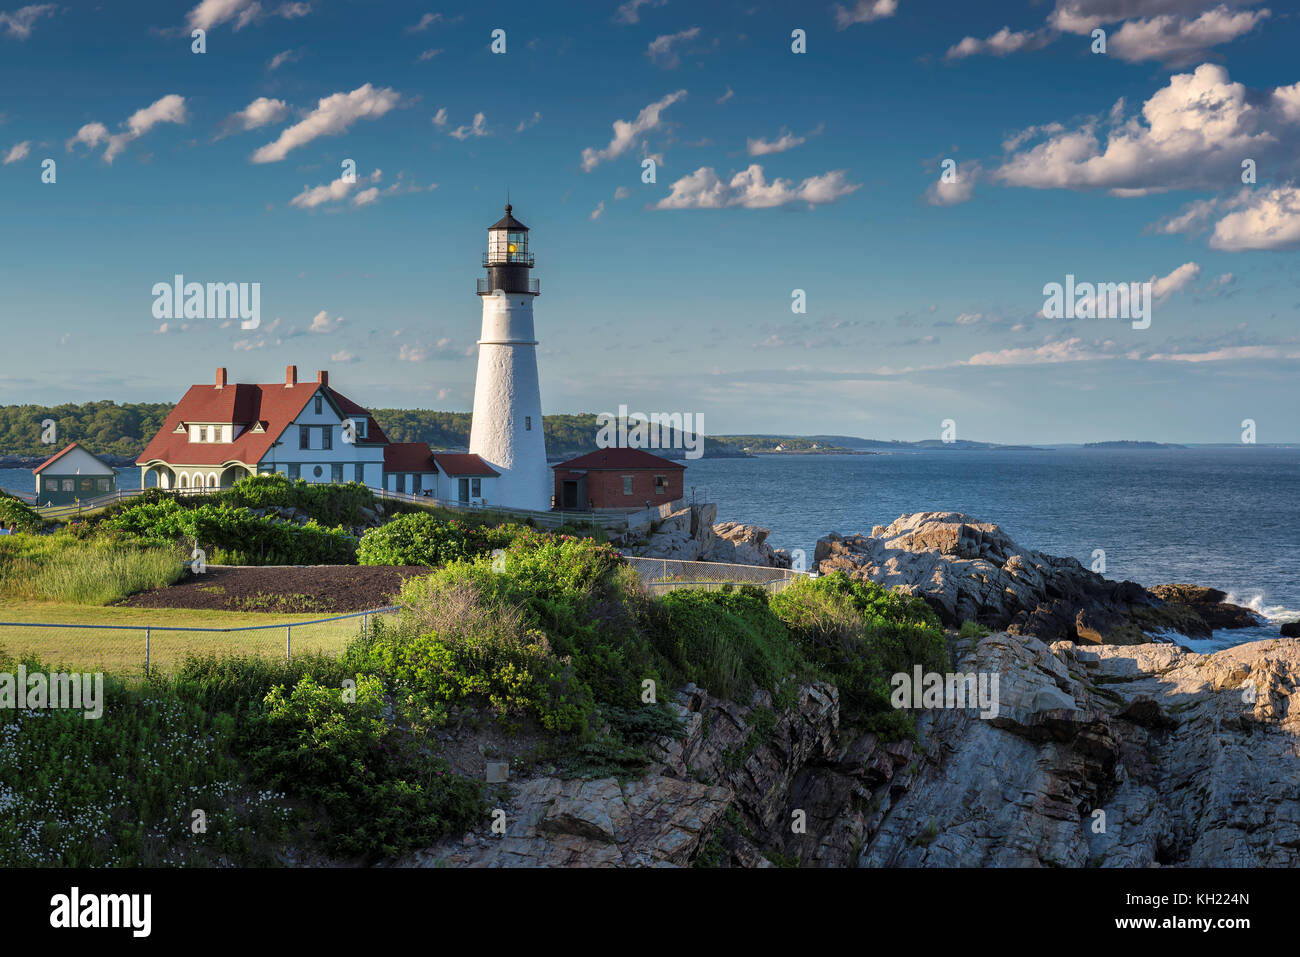 Portland Lighthouse, Maine, USA Stock Photo